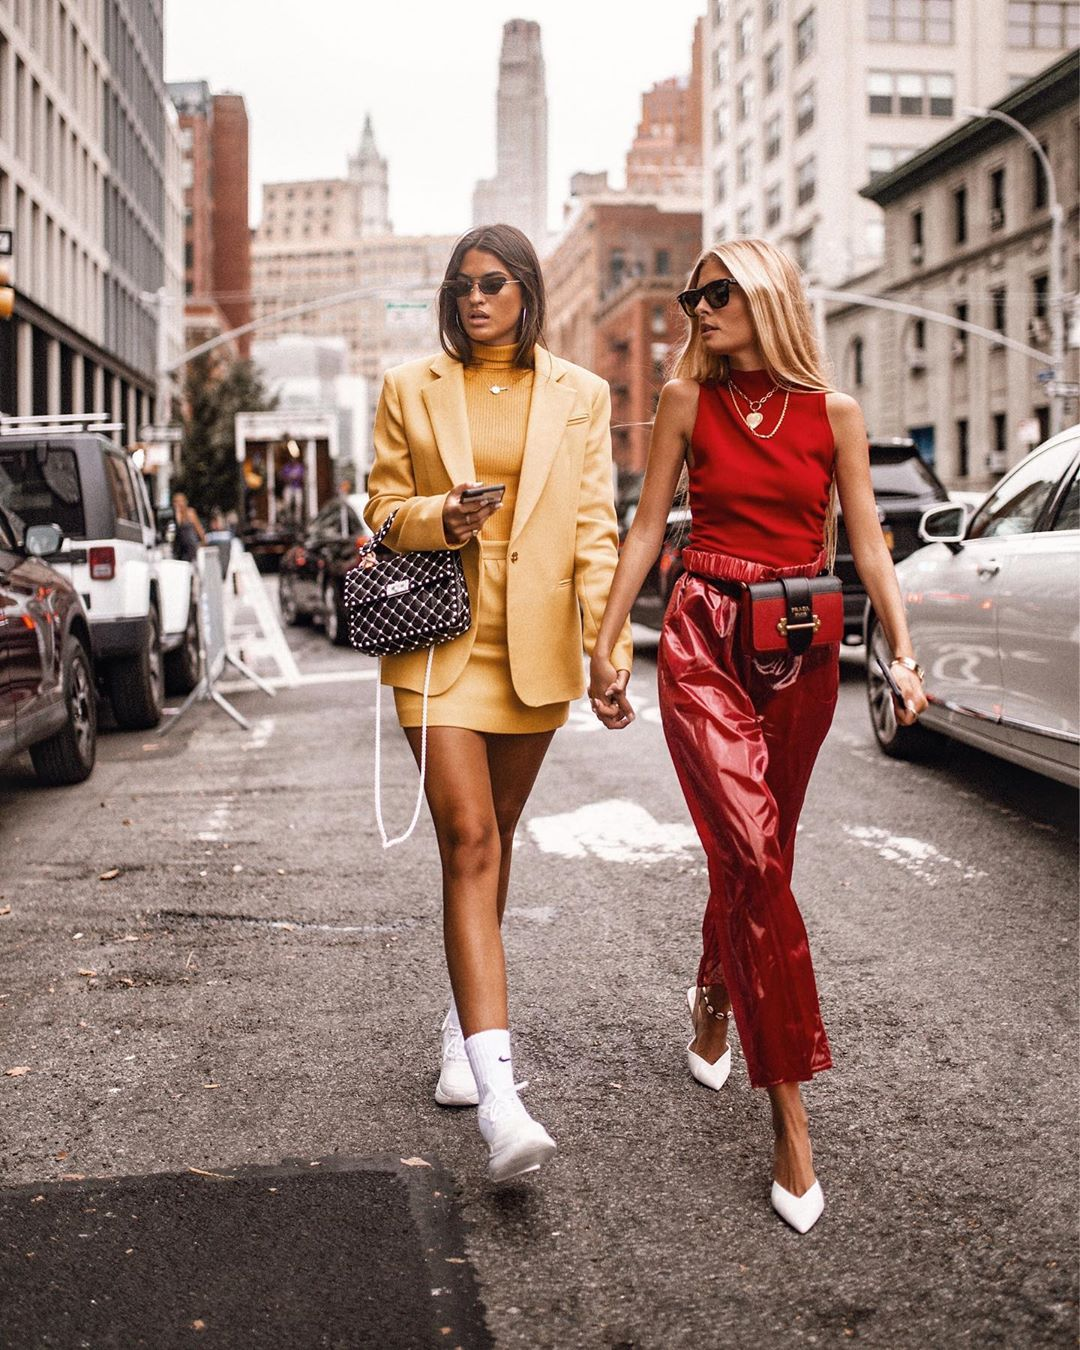 La modelo Marta Lozano camina junto a su amiga luciendo un total look amarillo, uno de los mejores look de las influencers para copiar esta temporada.